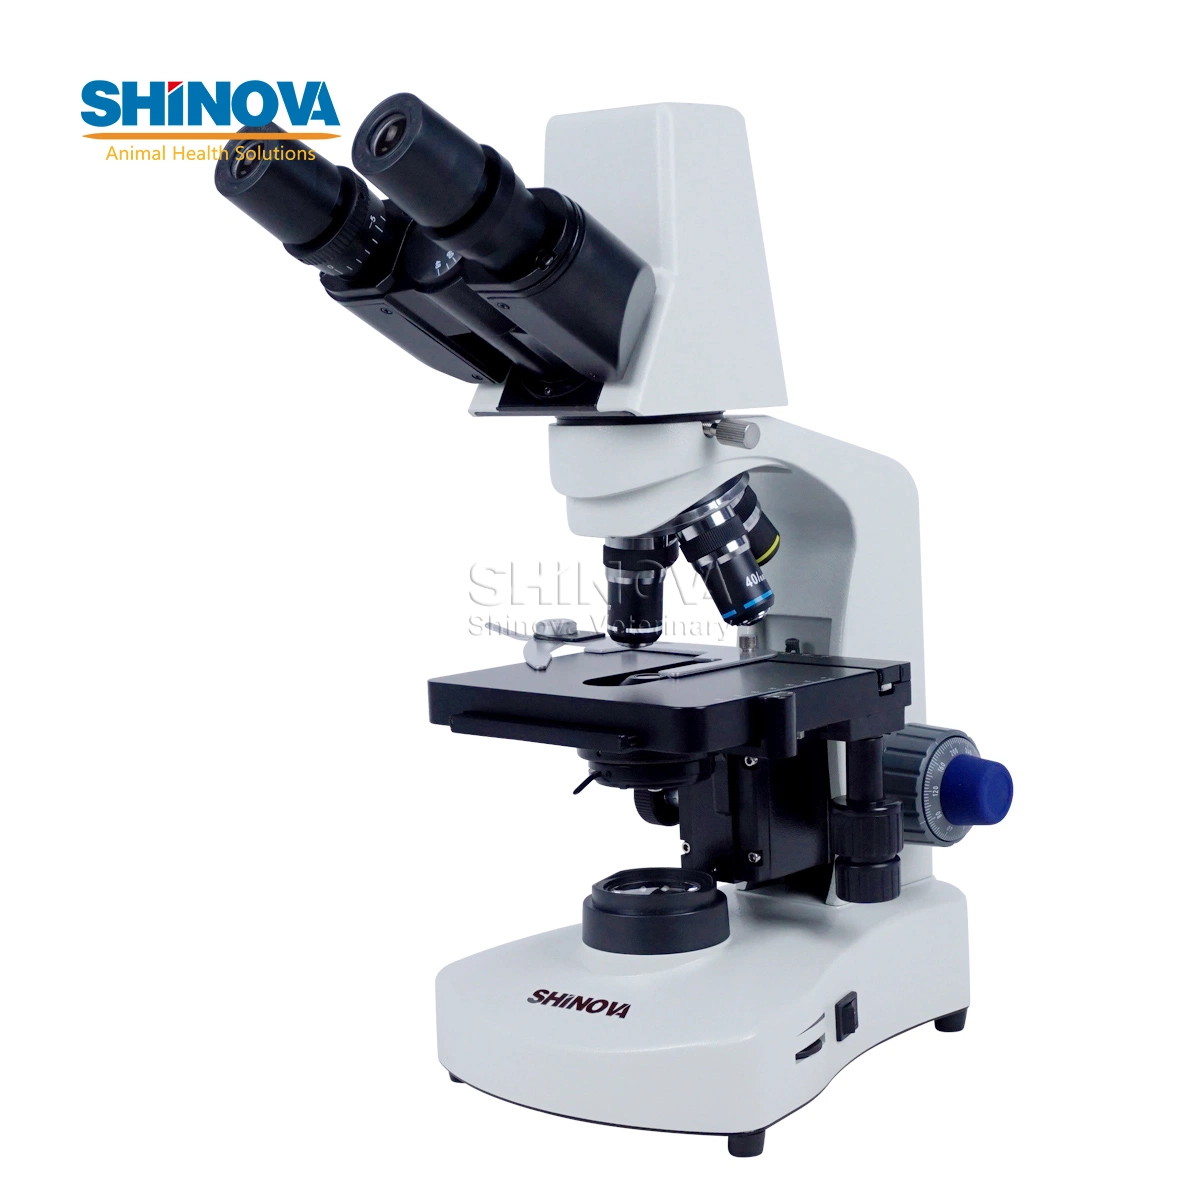 Vente chaude de microscopes biologiques numériques médicaux de 1,3 million de pixels pour laboratoire.